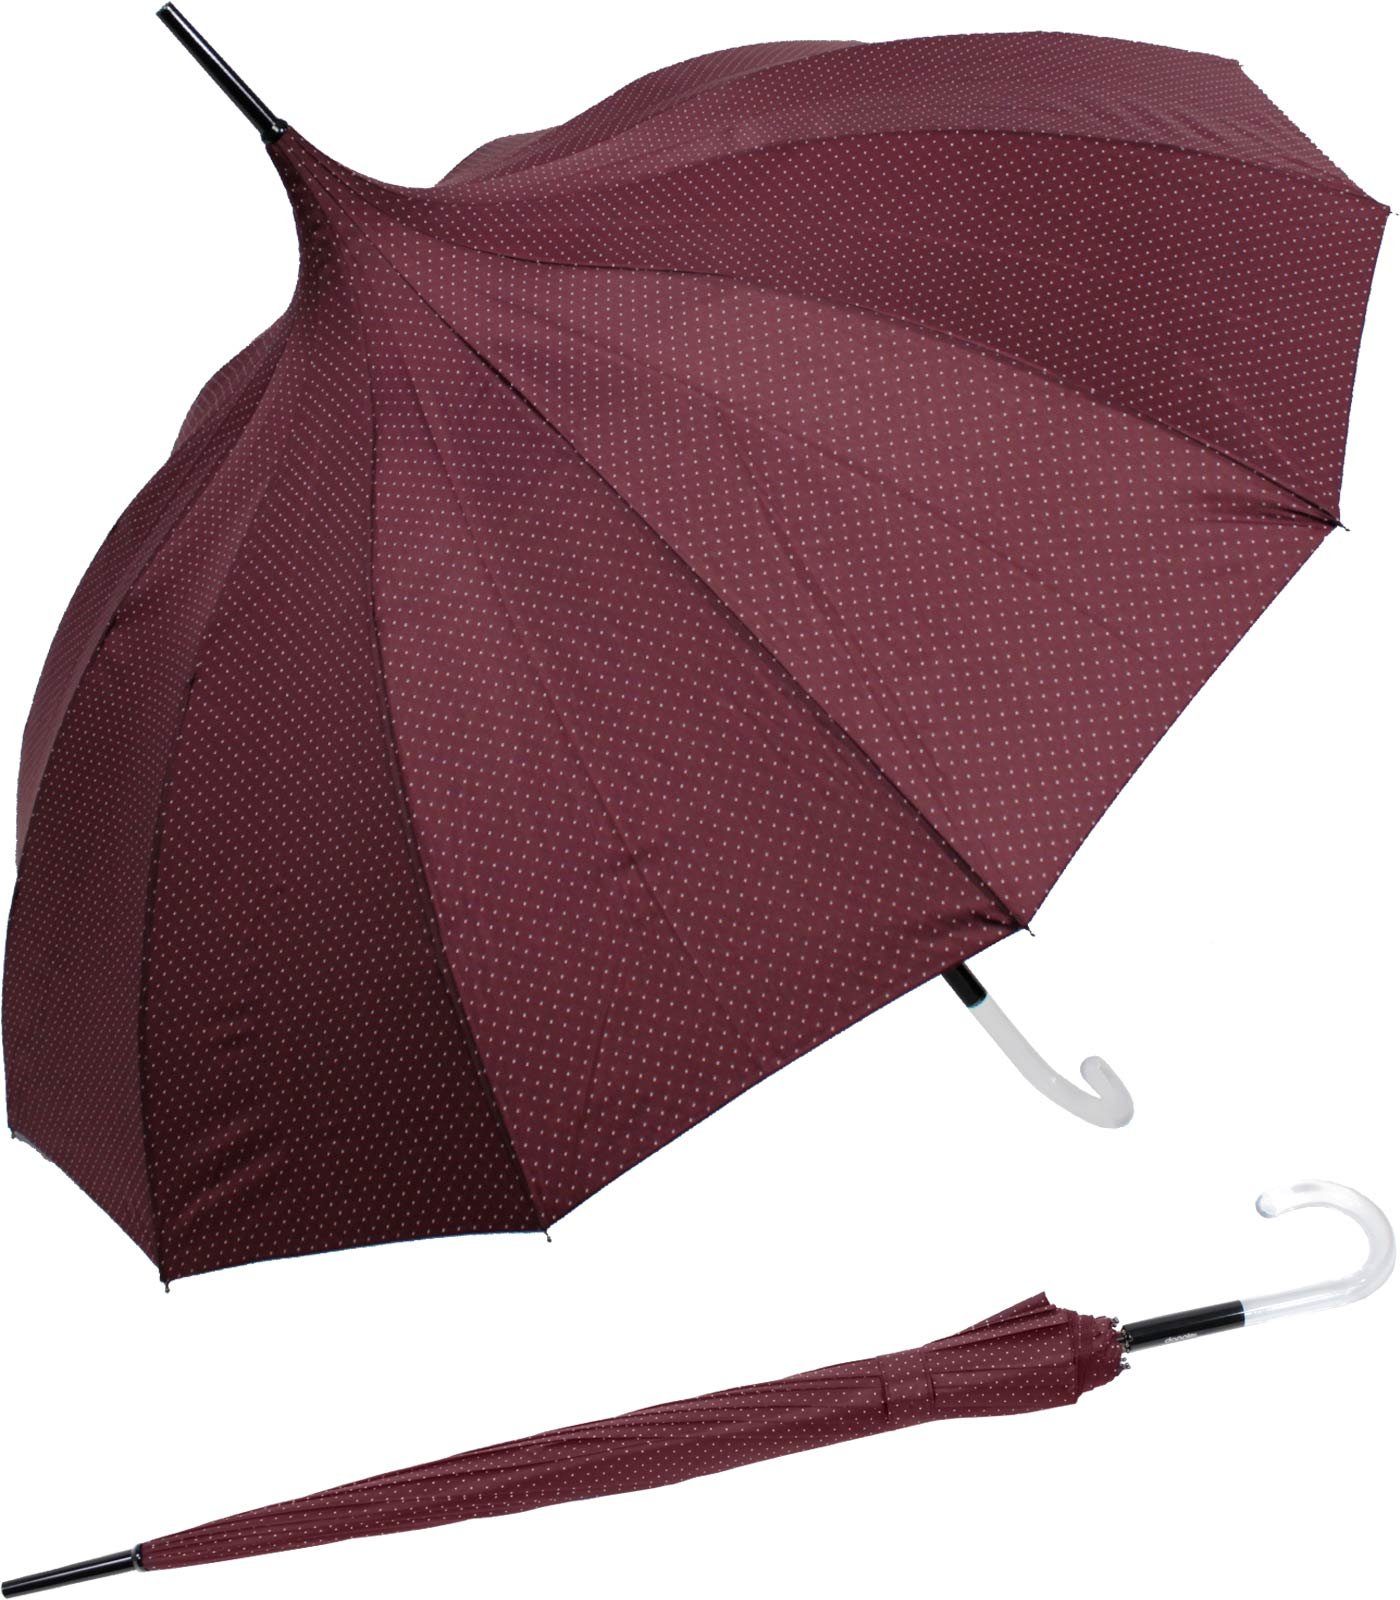 doppler® Langregenschirm auffällig geformter Damenschirm mit Auf-Automatik, elegante Pagodenform mit dezenten Punkten bordeaux